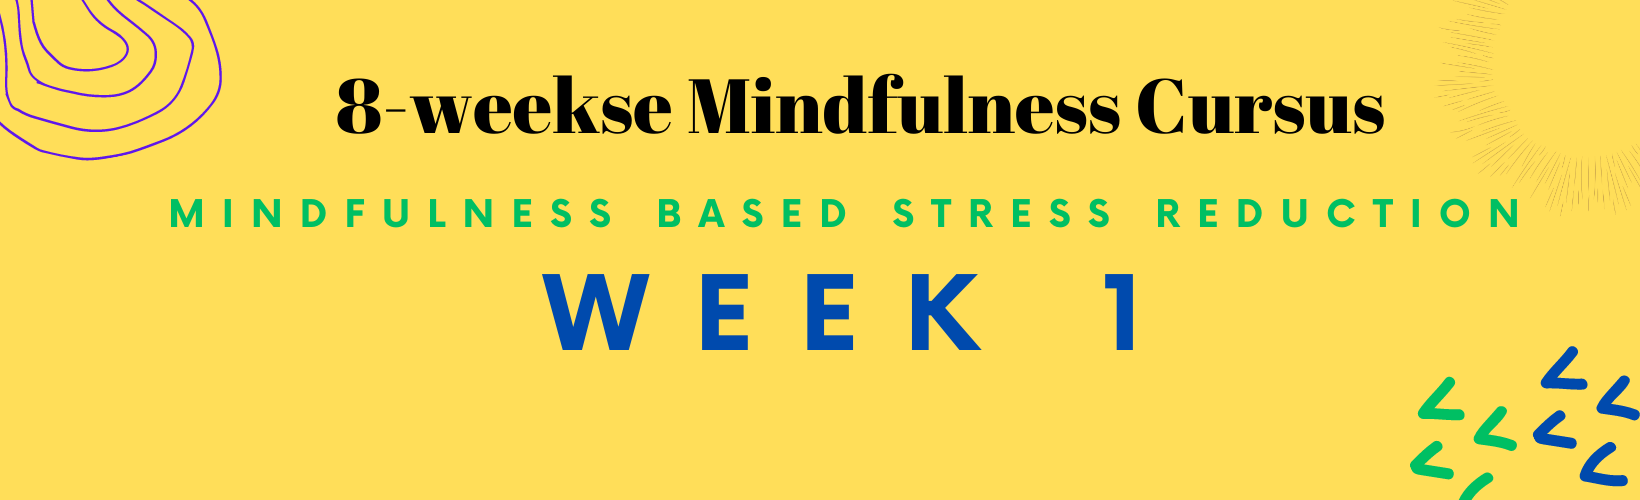 header week 1 mindfulness cursus